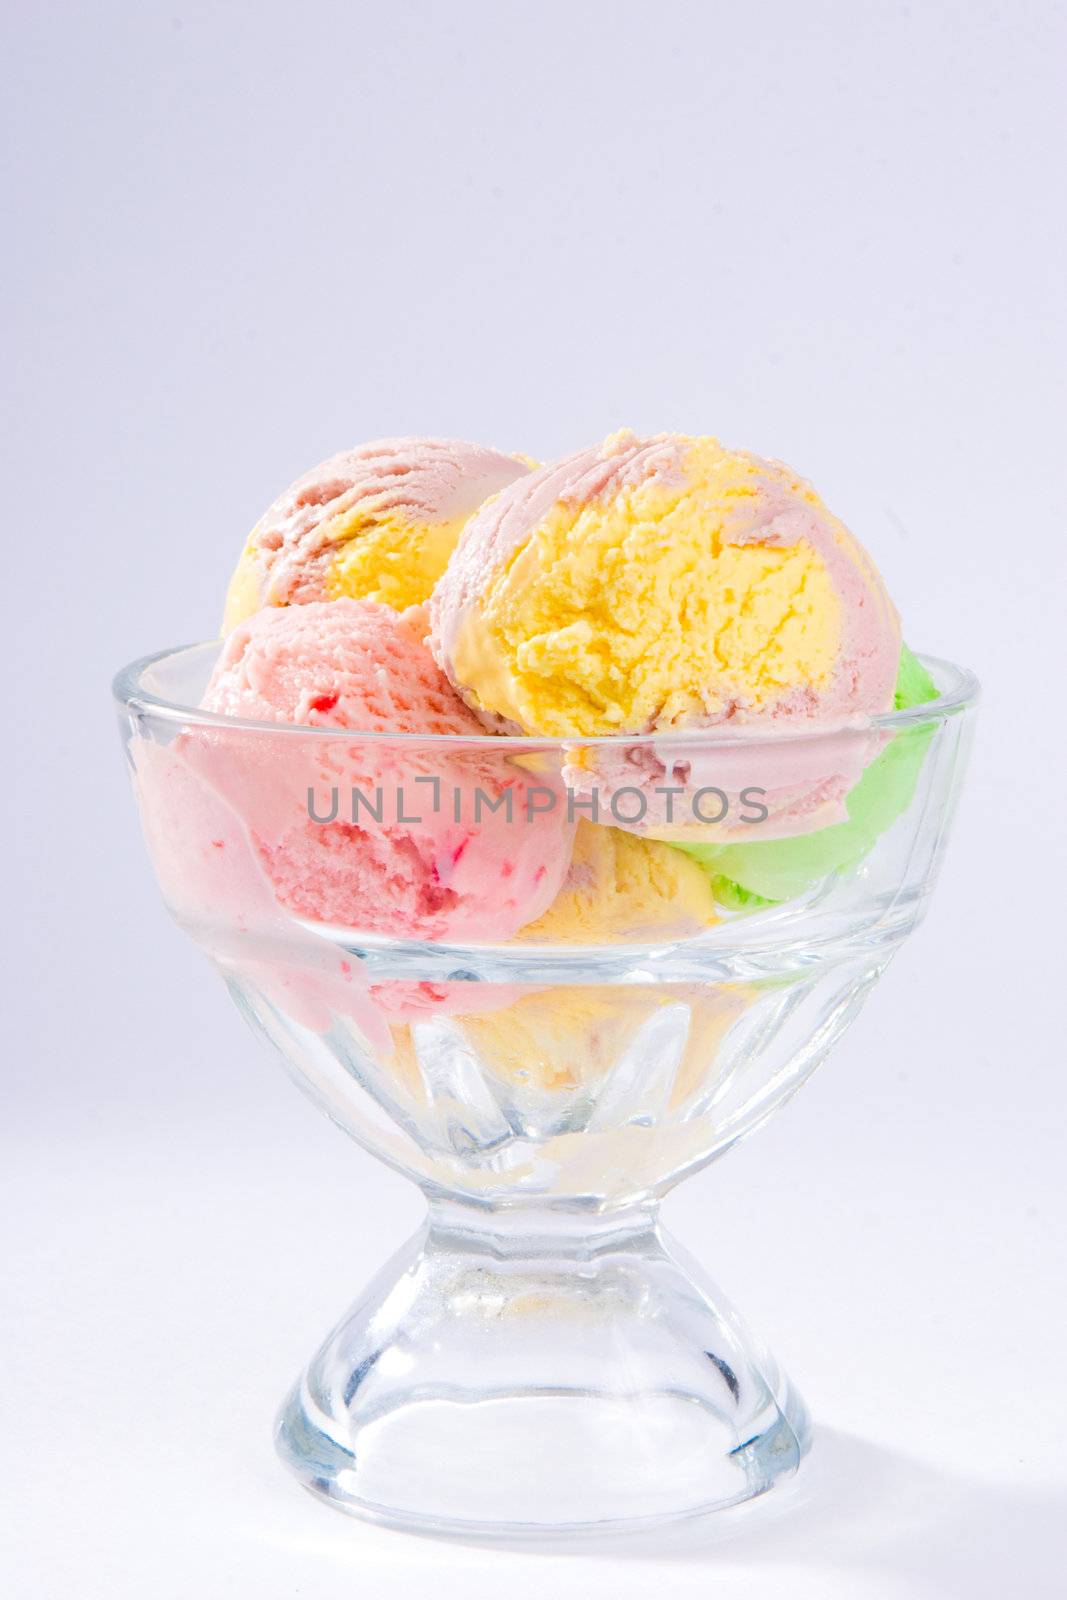 delicious ice cream sundae